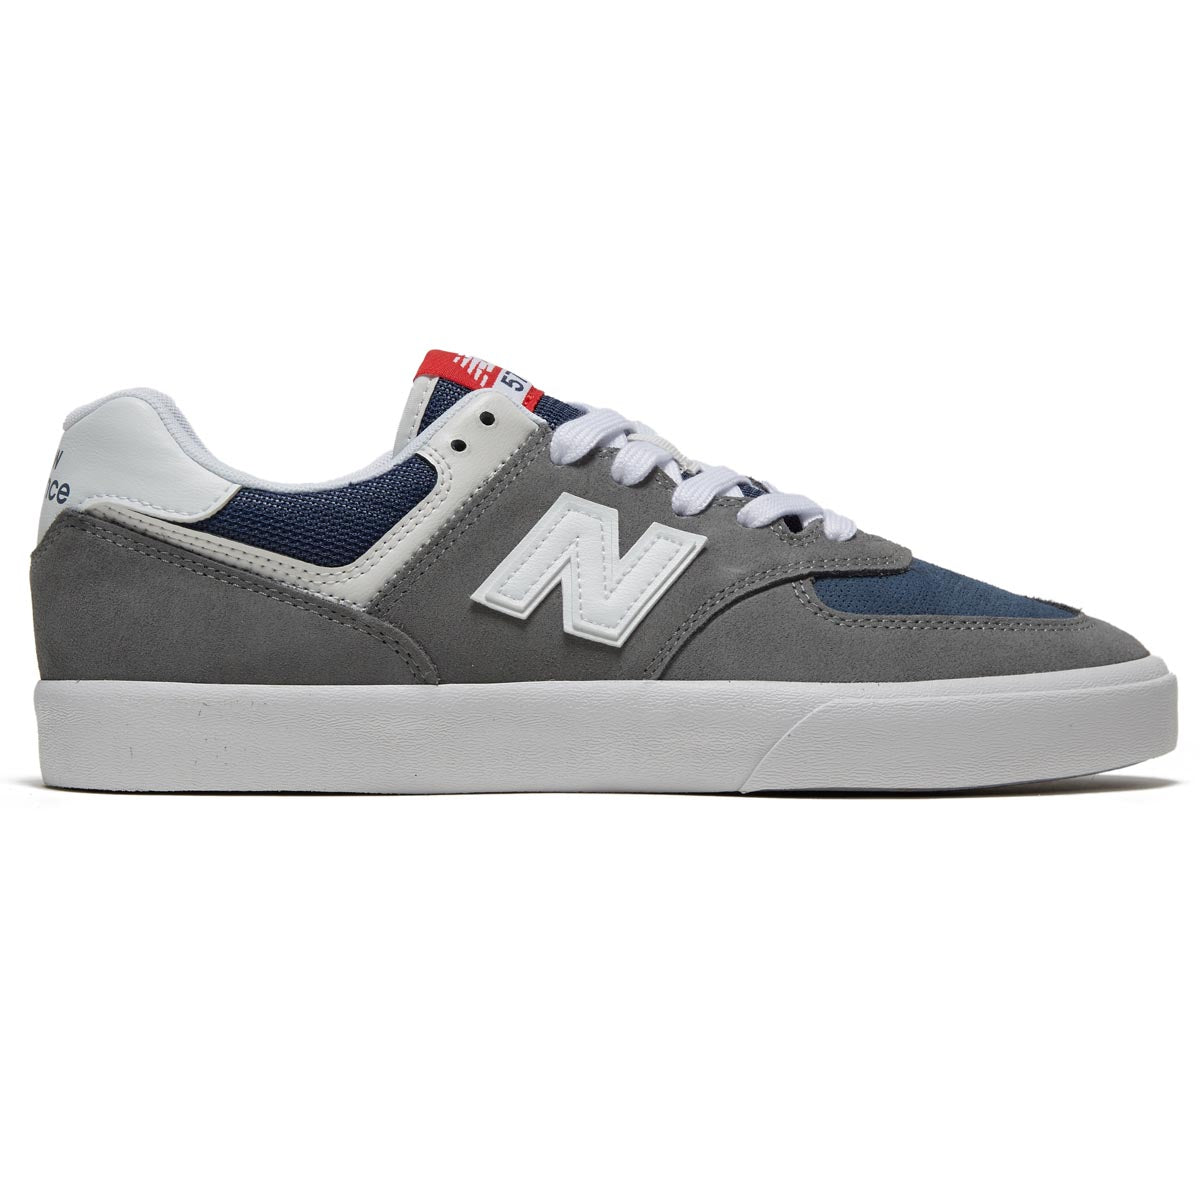 New Balance 574 Vulc Shoes - Grey/White image 1